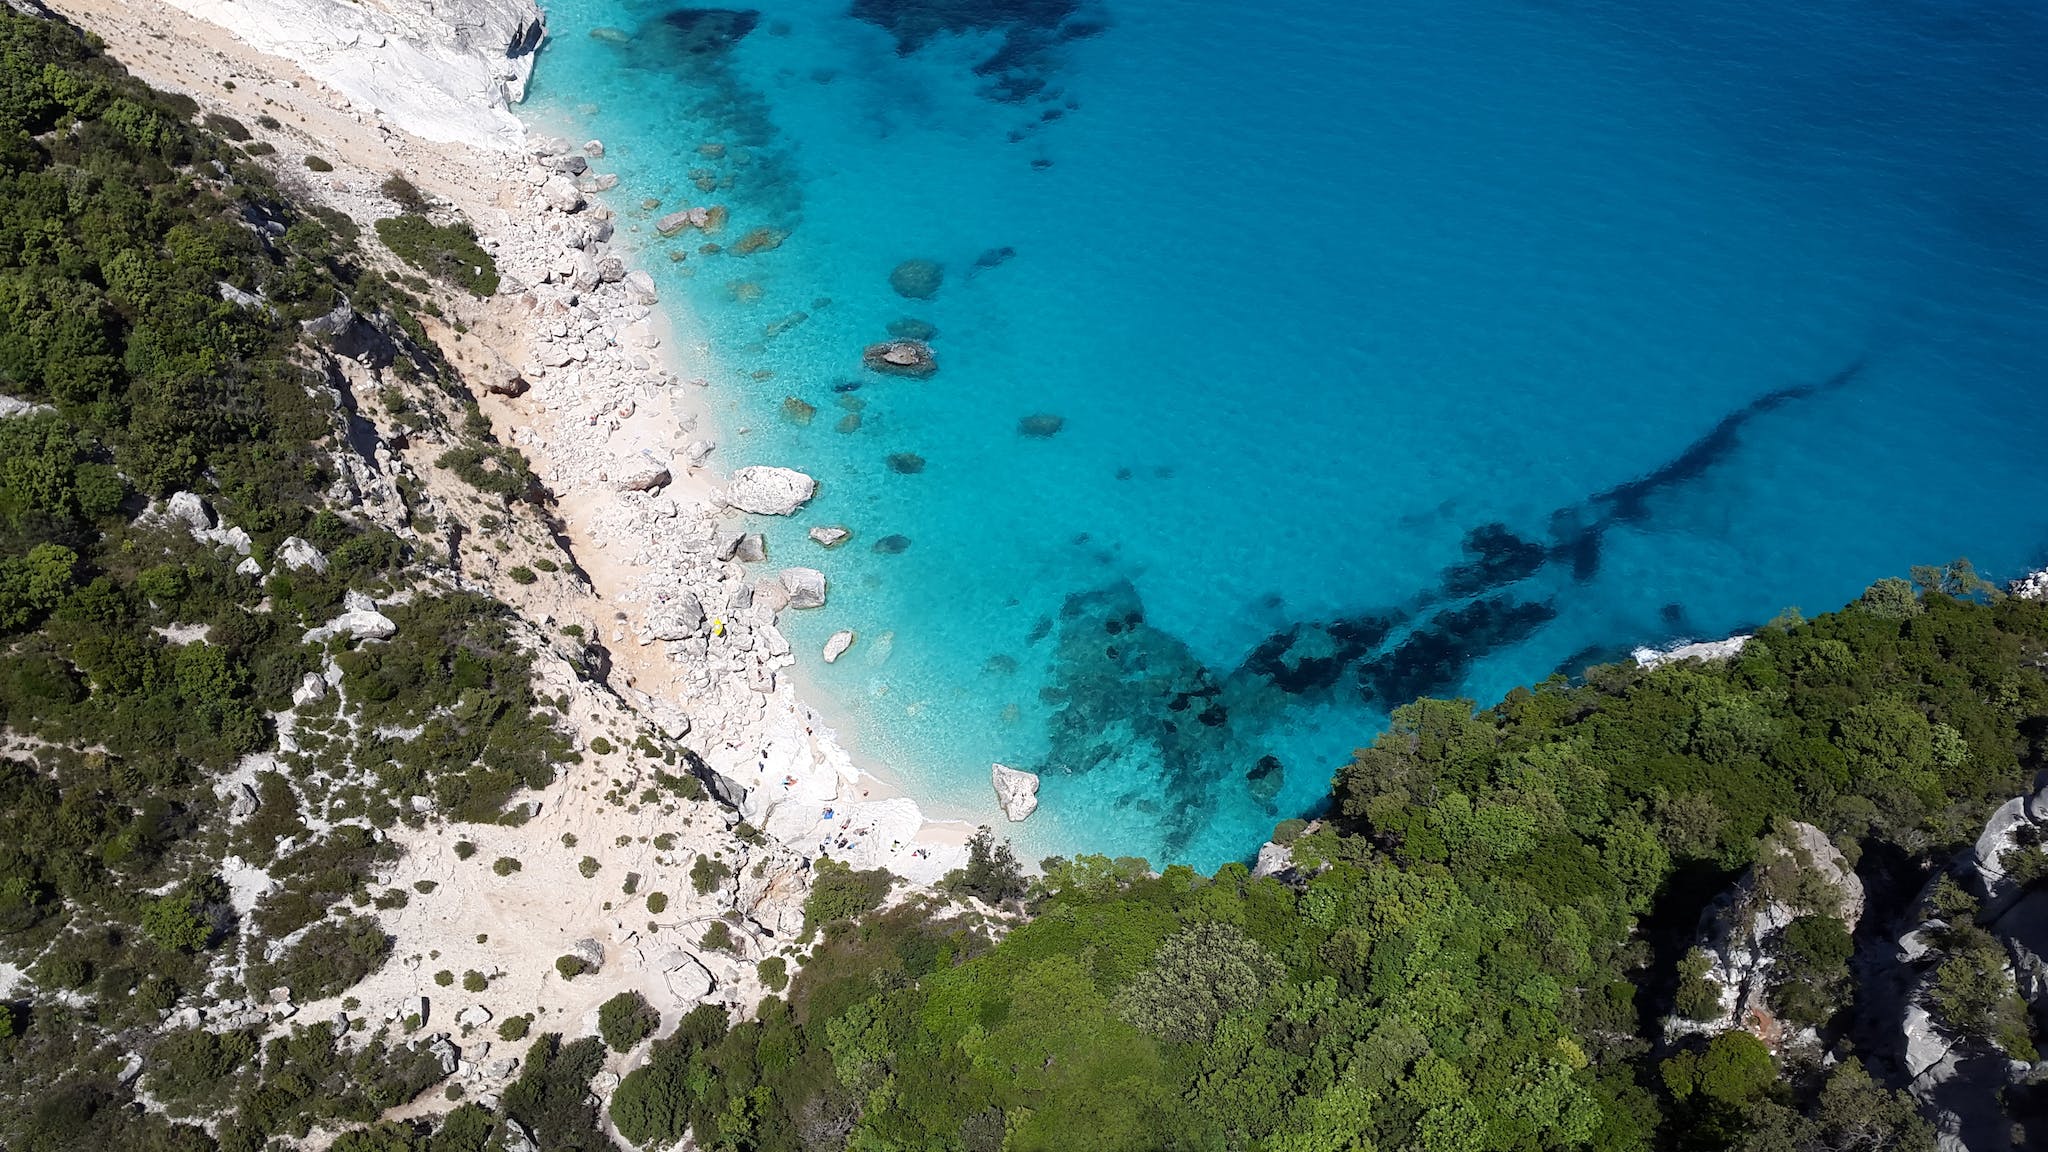 Sardinia's idyllic coastline. Photo: Getty.